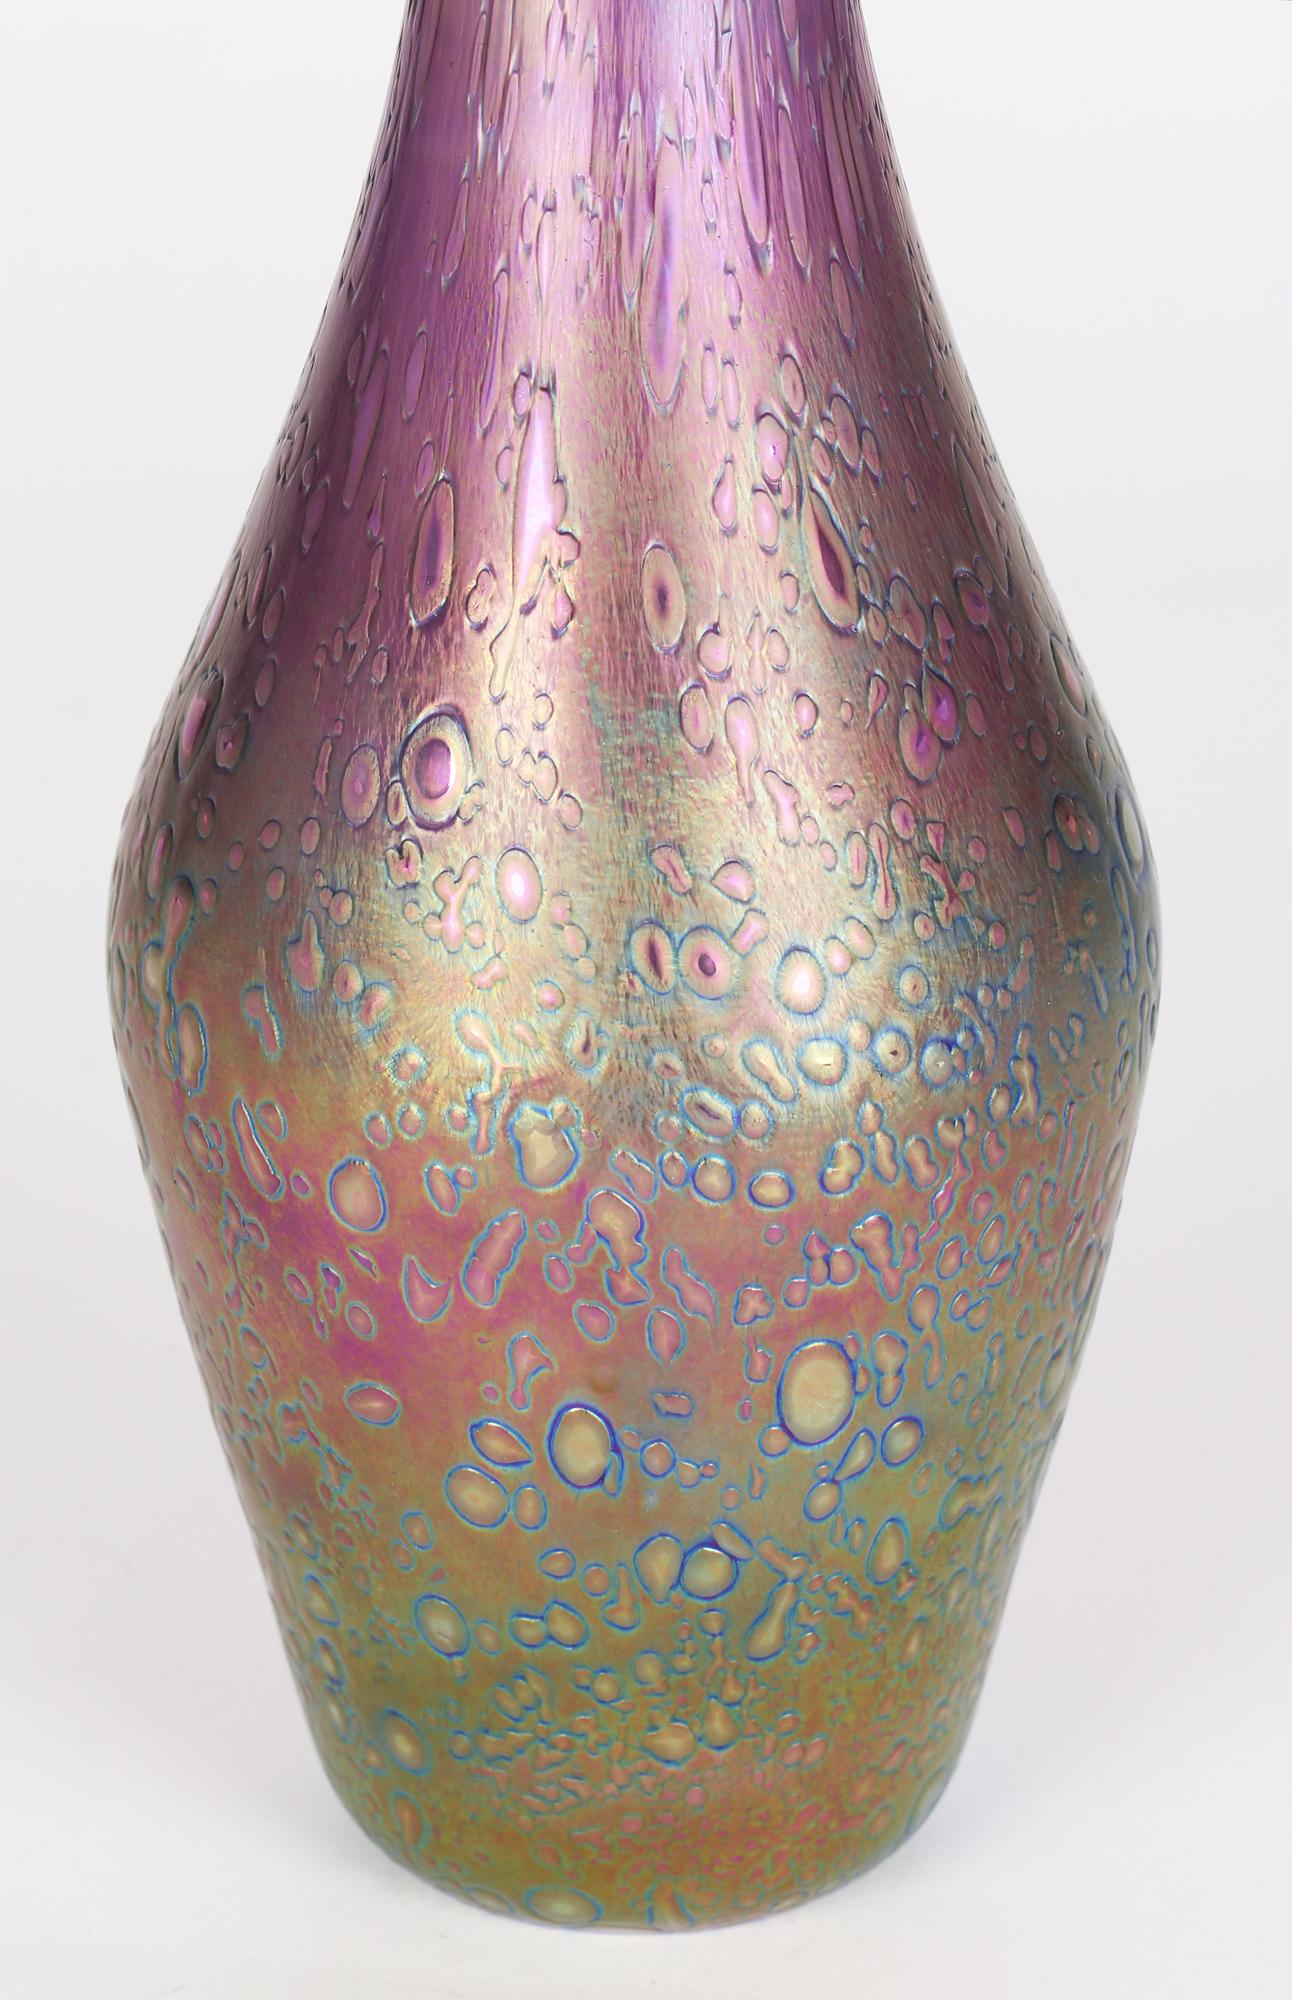 Beau vase vintage en verre d'art irisé Jack in the pulpit, probablement par Heron Glass ou Czech et datant du 20ème siècle. Le vase a une teinte améthyste et est soufflé à la main avec une finition texturée sur le corps avec une grande fleur de lys